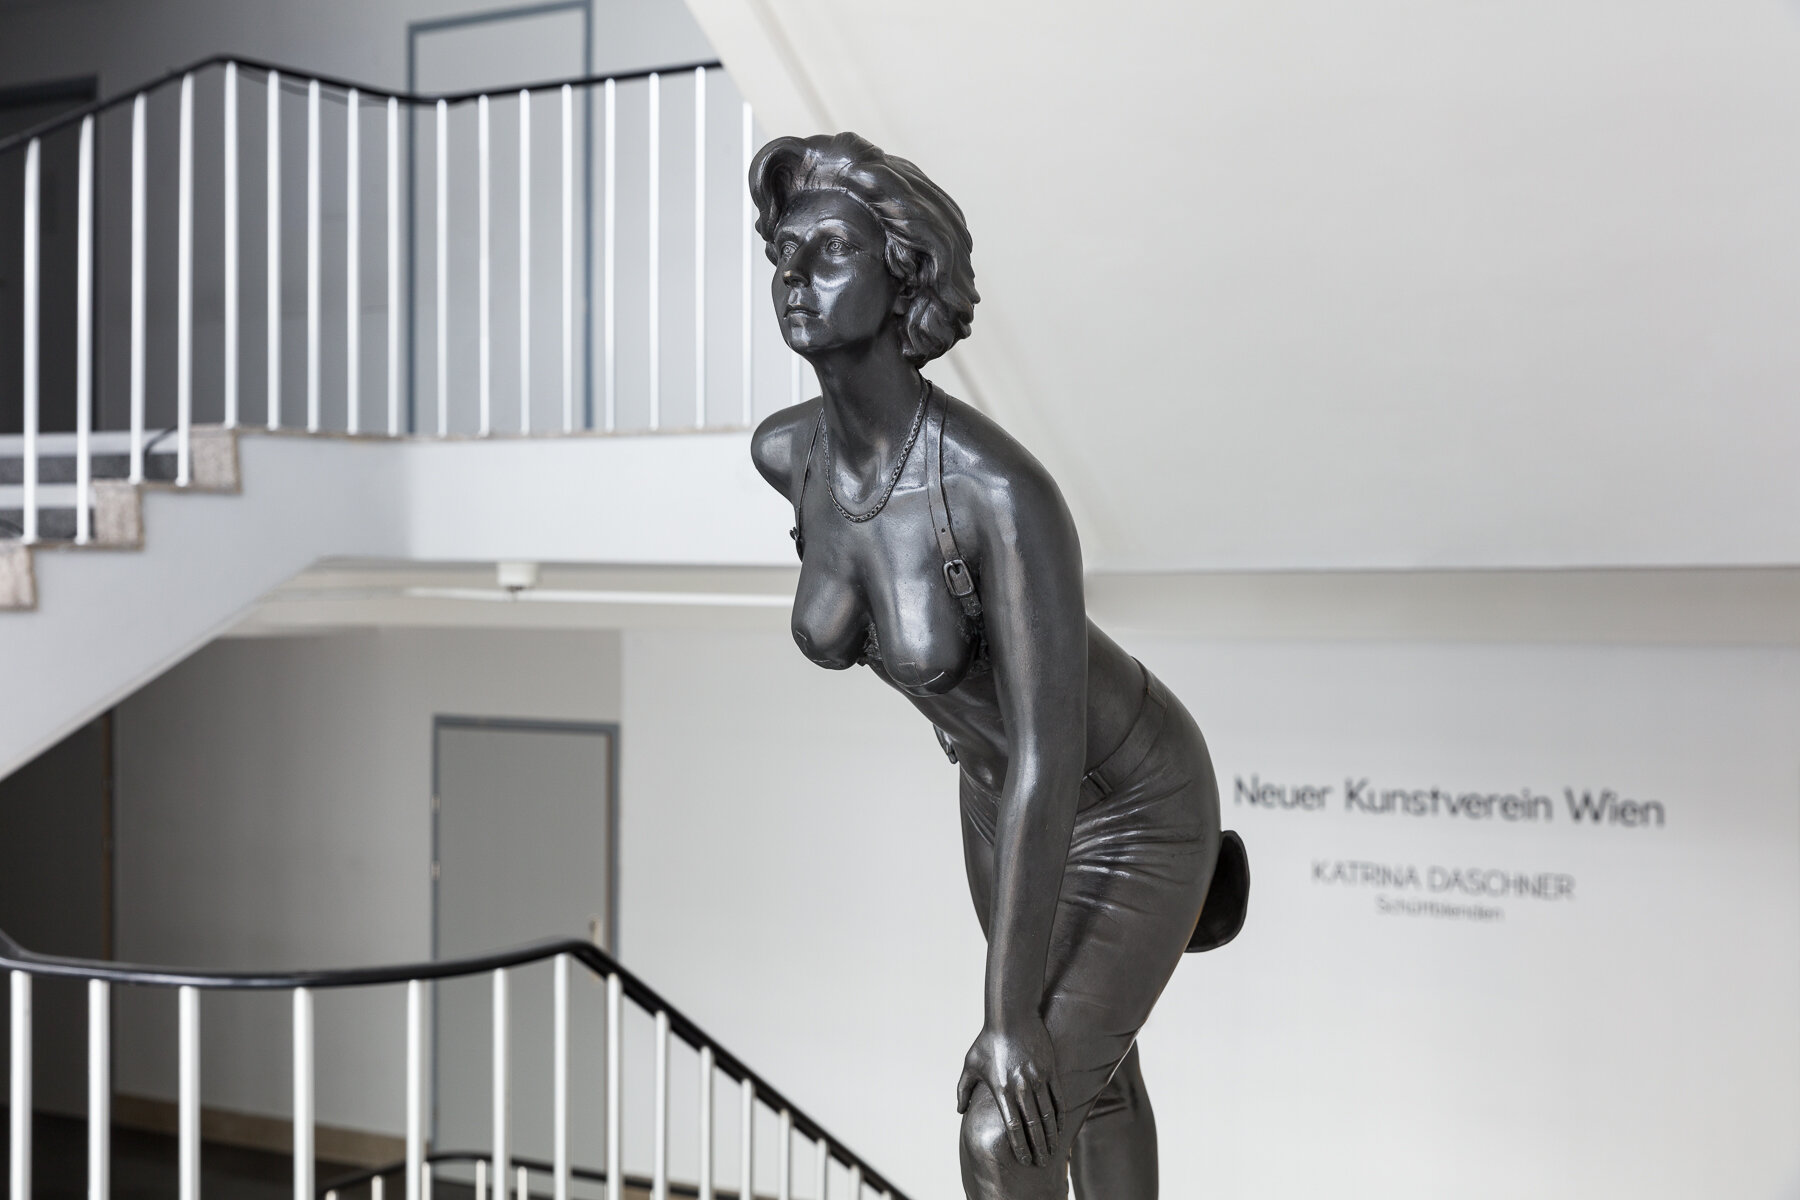 2020_02_26_Neuer-Kunstverein-Wien_014_web.jpg